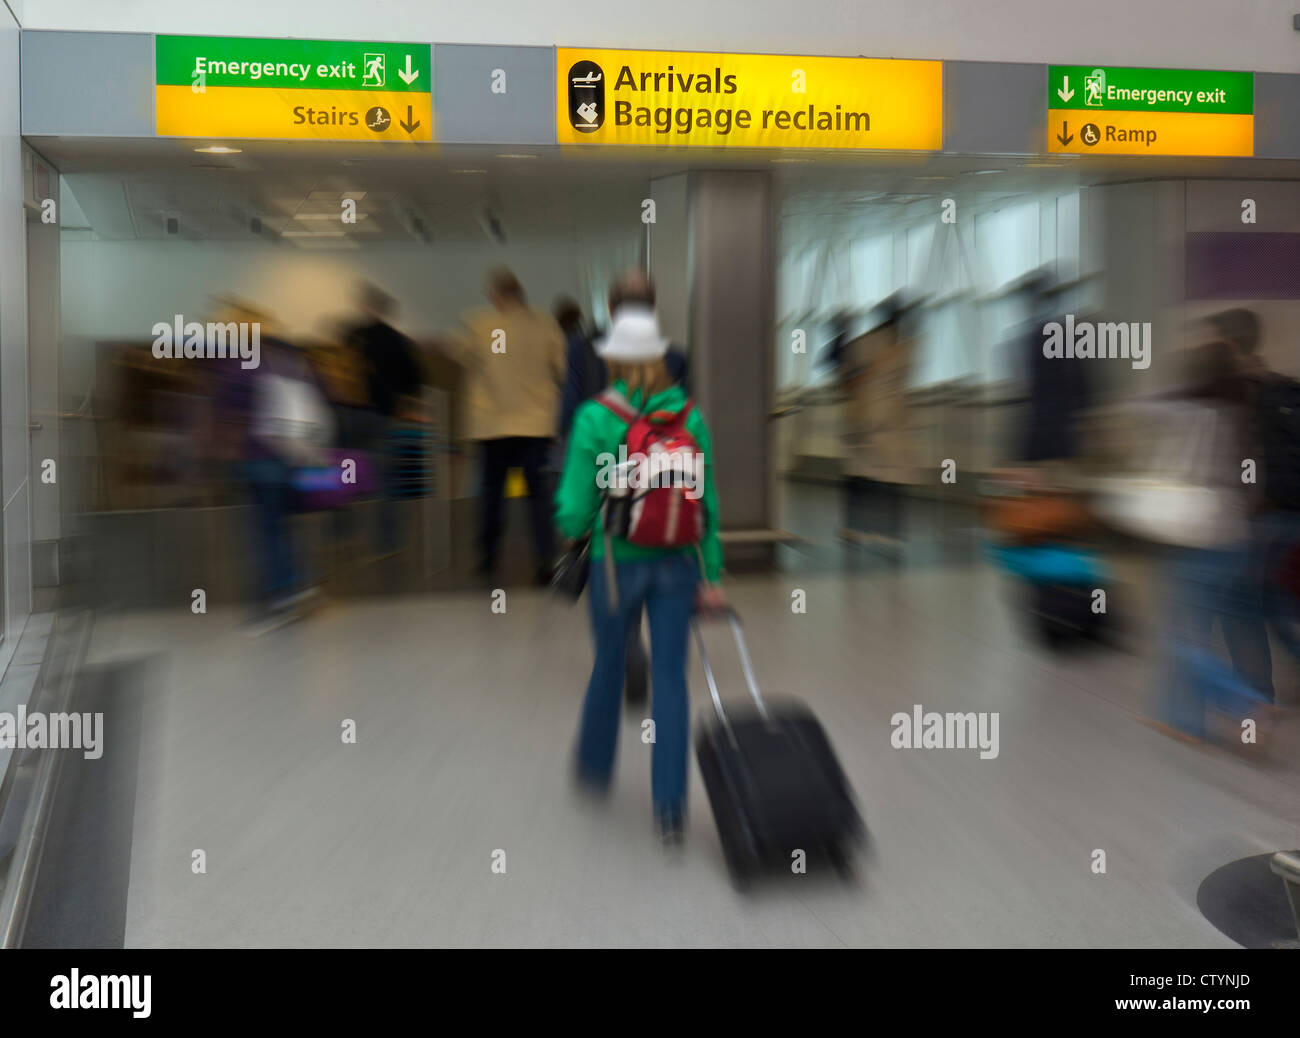 Los pasajeros de las líneas aéreas internacionales que llegan al aeropuerto de Heathrow en Londres rumbo a las llegadas y las áreas de reclamo de equipaje Foto de stock